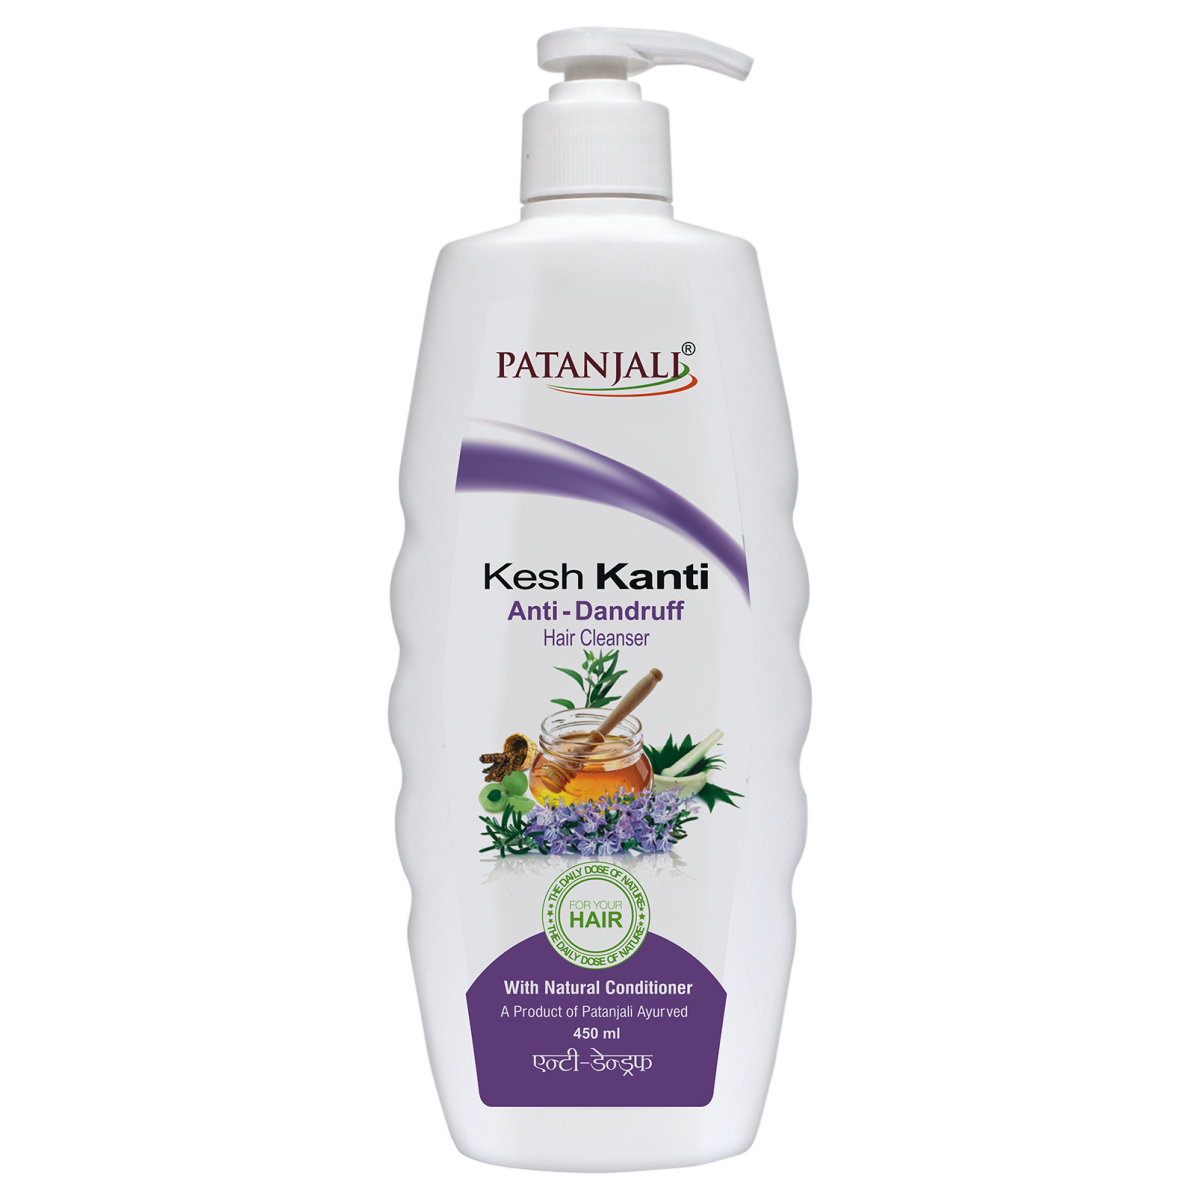 Patanjali Kesh Kanti Herbal Mehandi Hair Mask Cream 100 gm Pack of 2: Buy  Patanjali Kesh Kanti Herbal Mehandi Hair Mask Cream 100 gm Pack of 2 at  Best Prices in India - Snapdeal